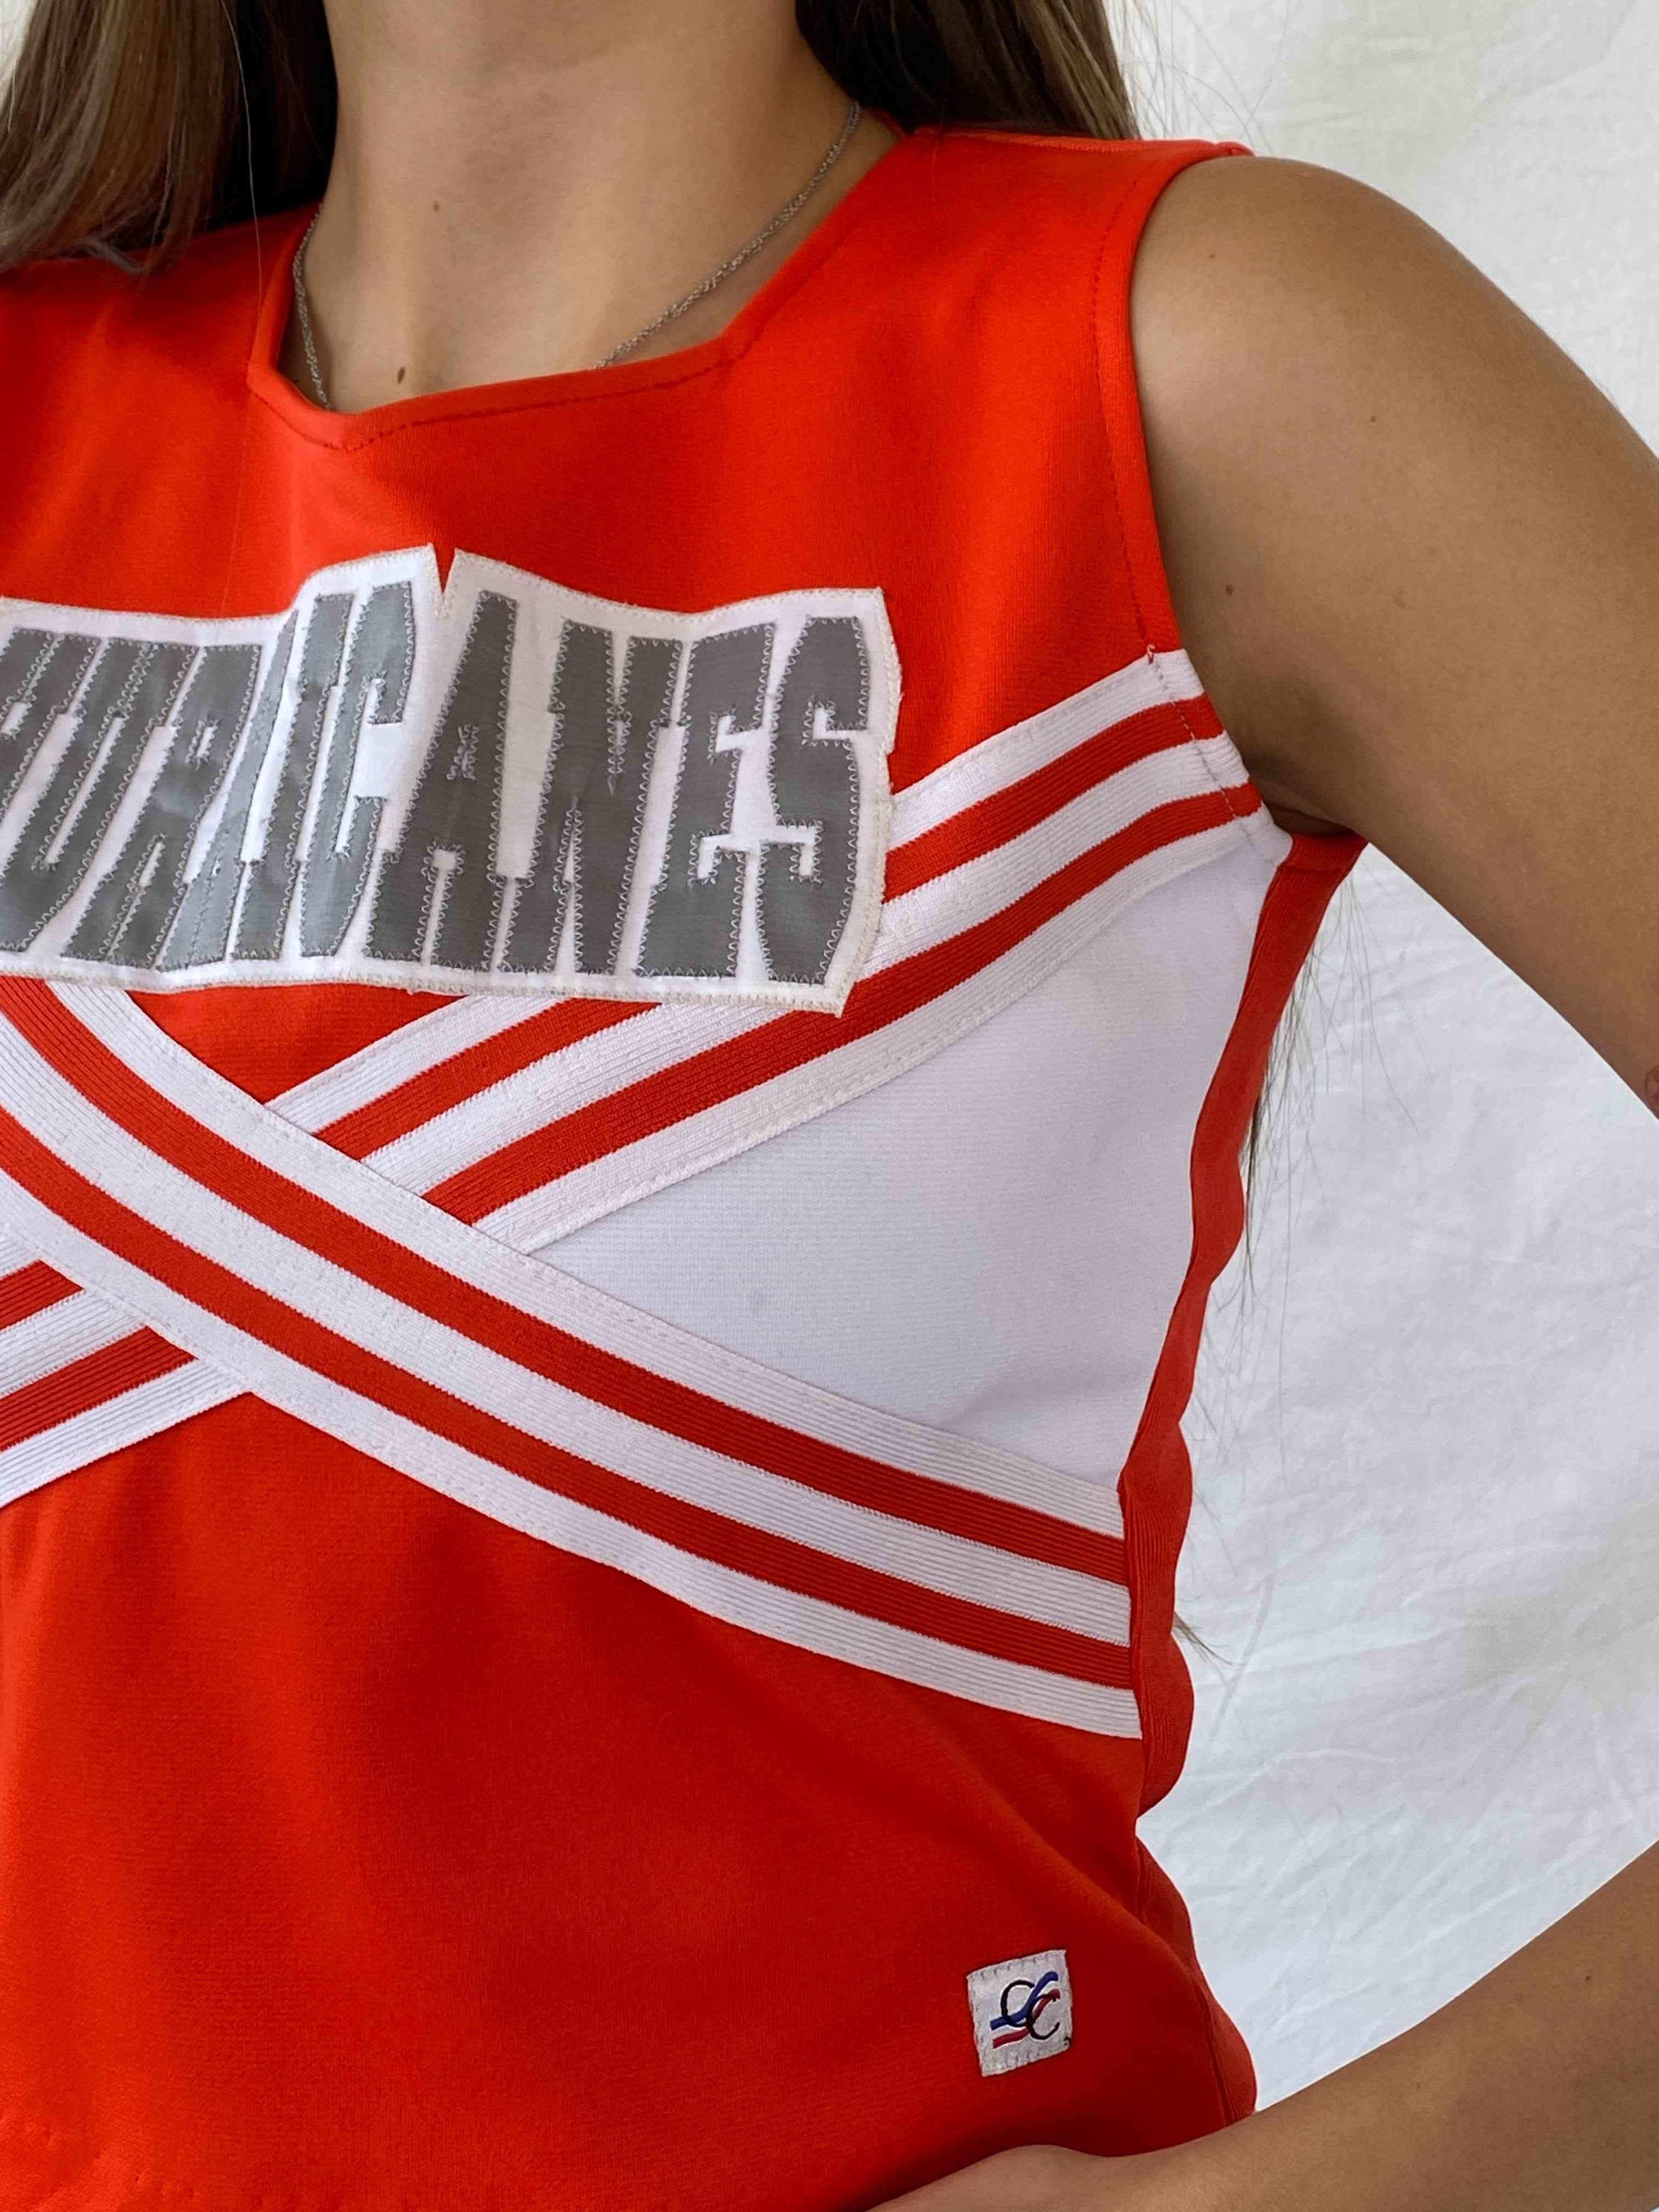 Y2K Orange Cheerleader Top - Balagan Vintage Sleeveless Top 00s, 90s, Mira